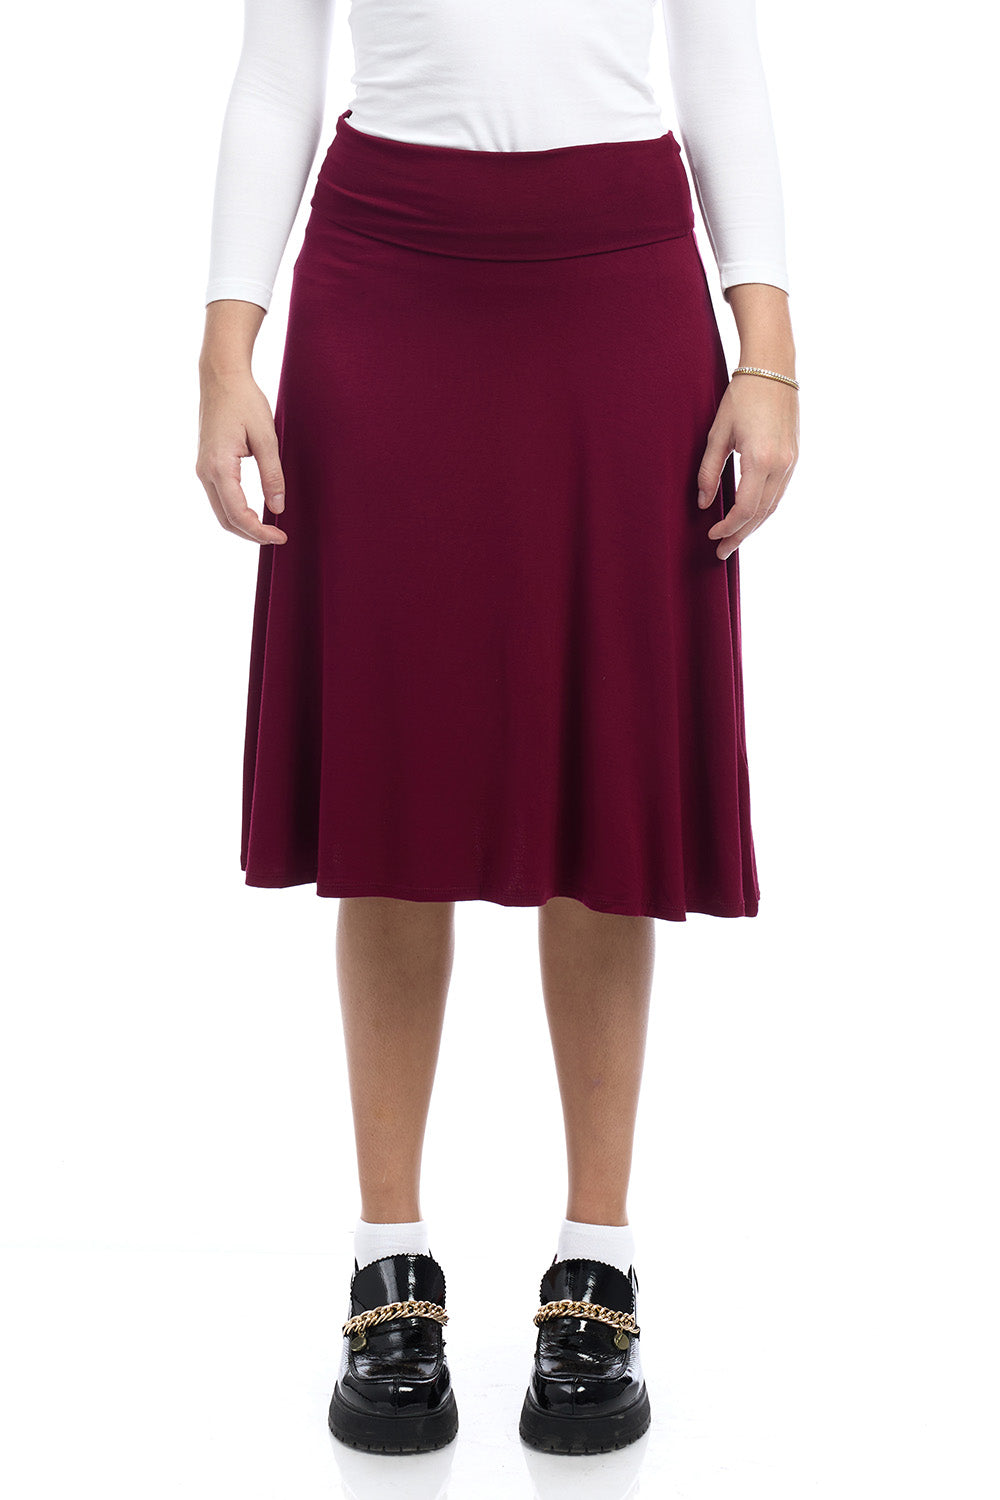 Old Navy inspired foldover flare midi burgundy skirt